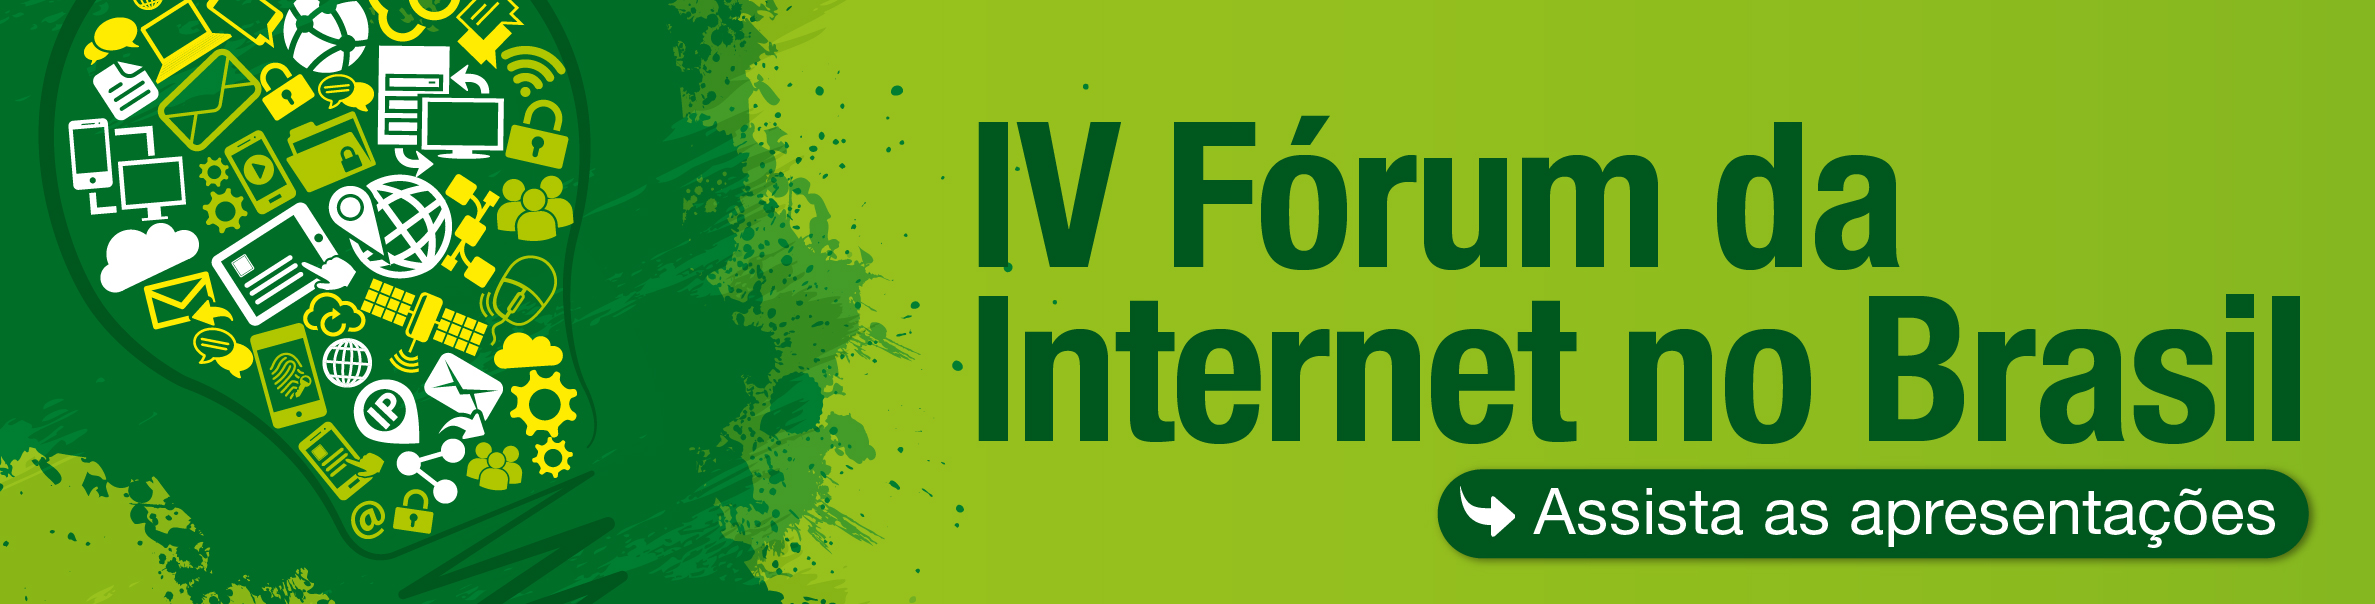 IV Fórum da Internet no Brasil